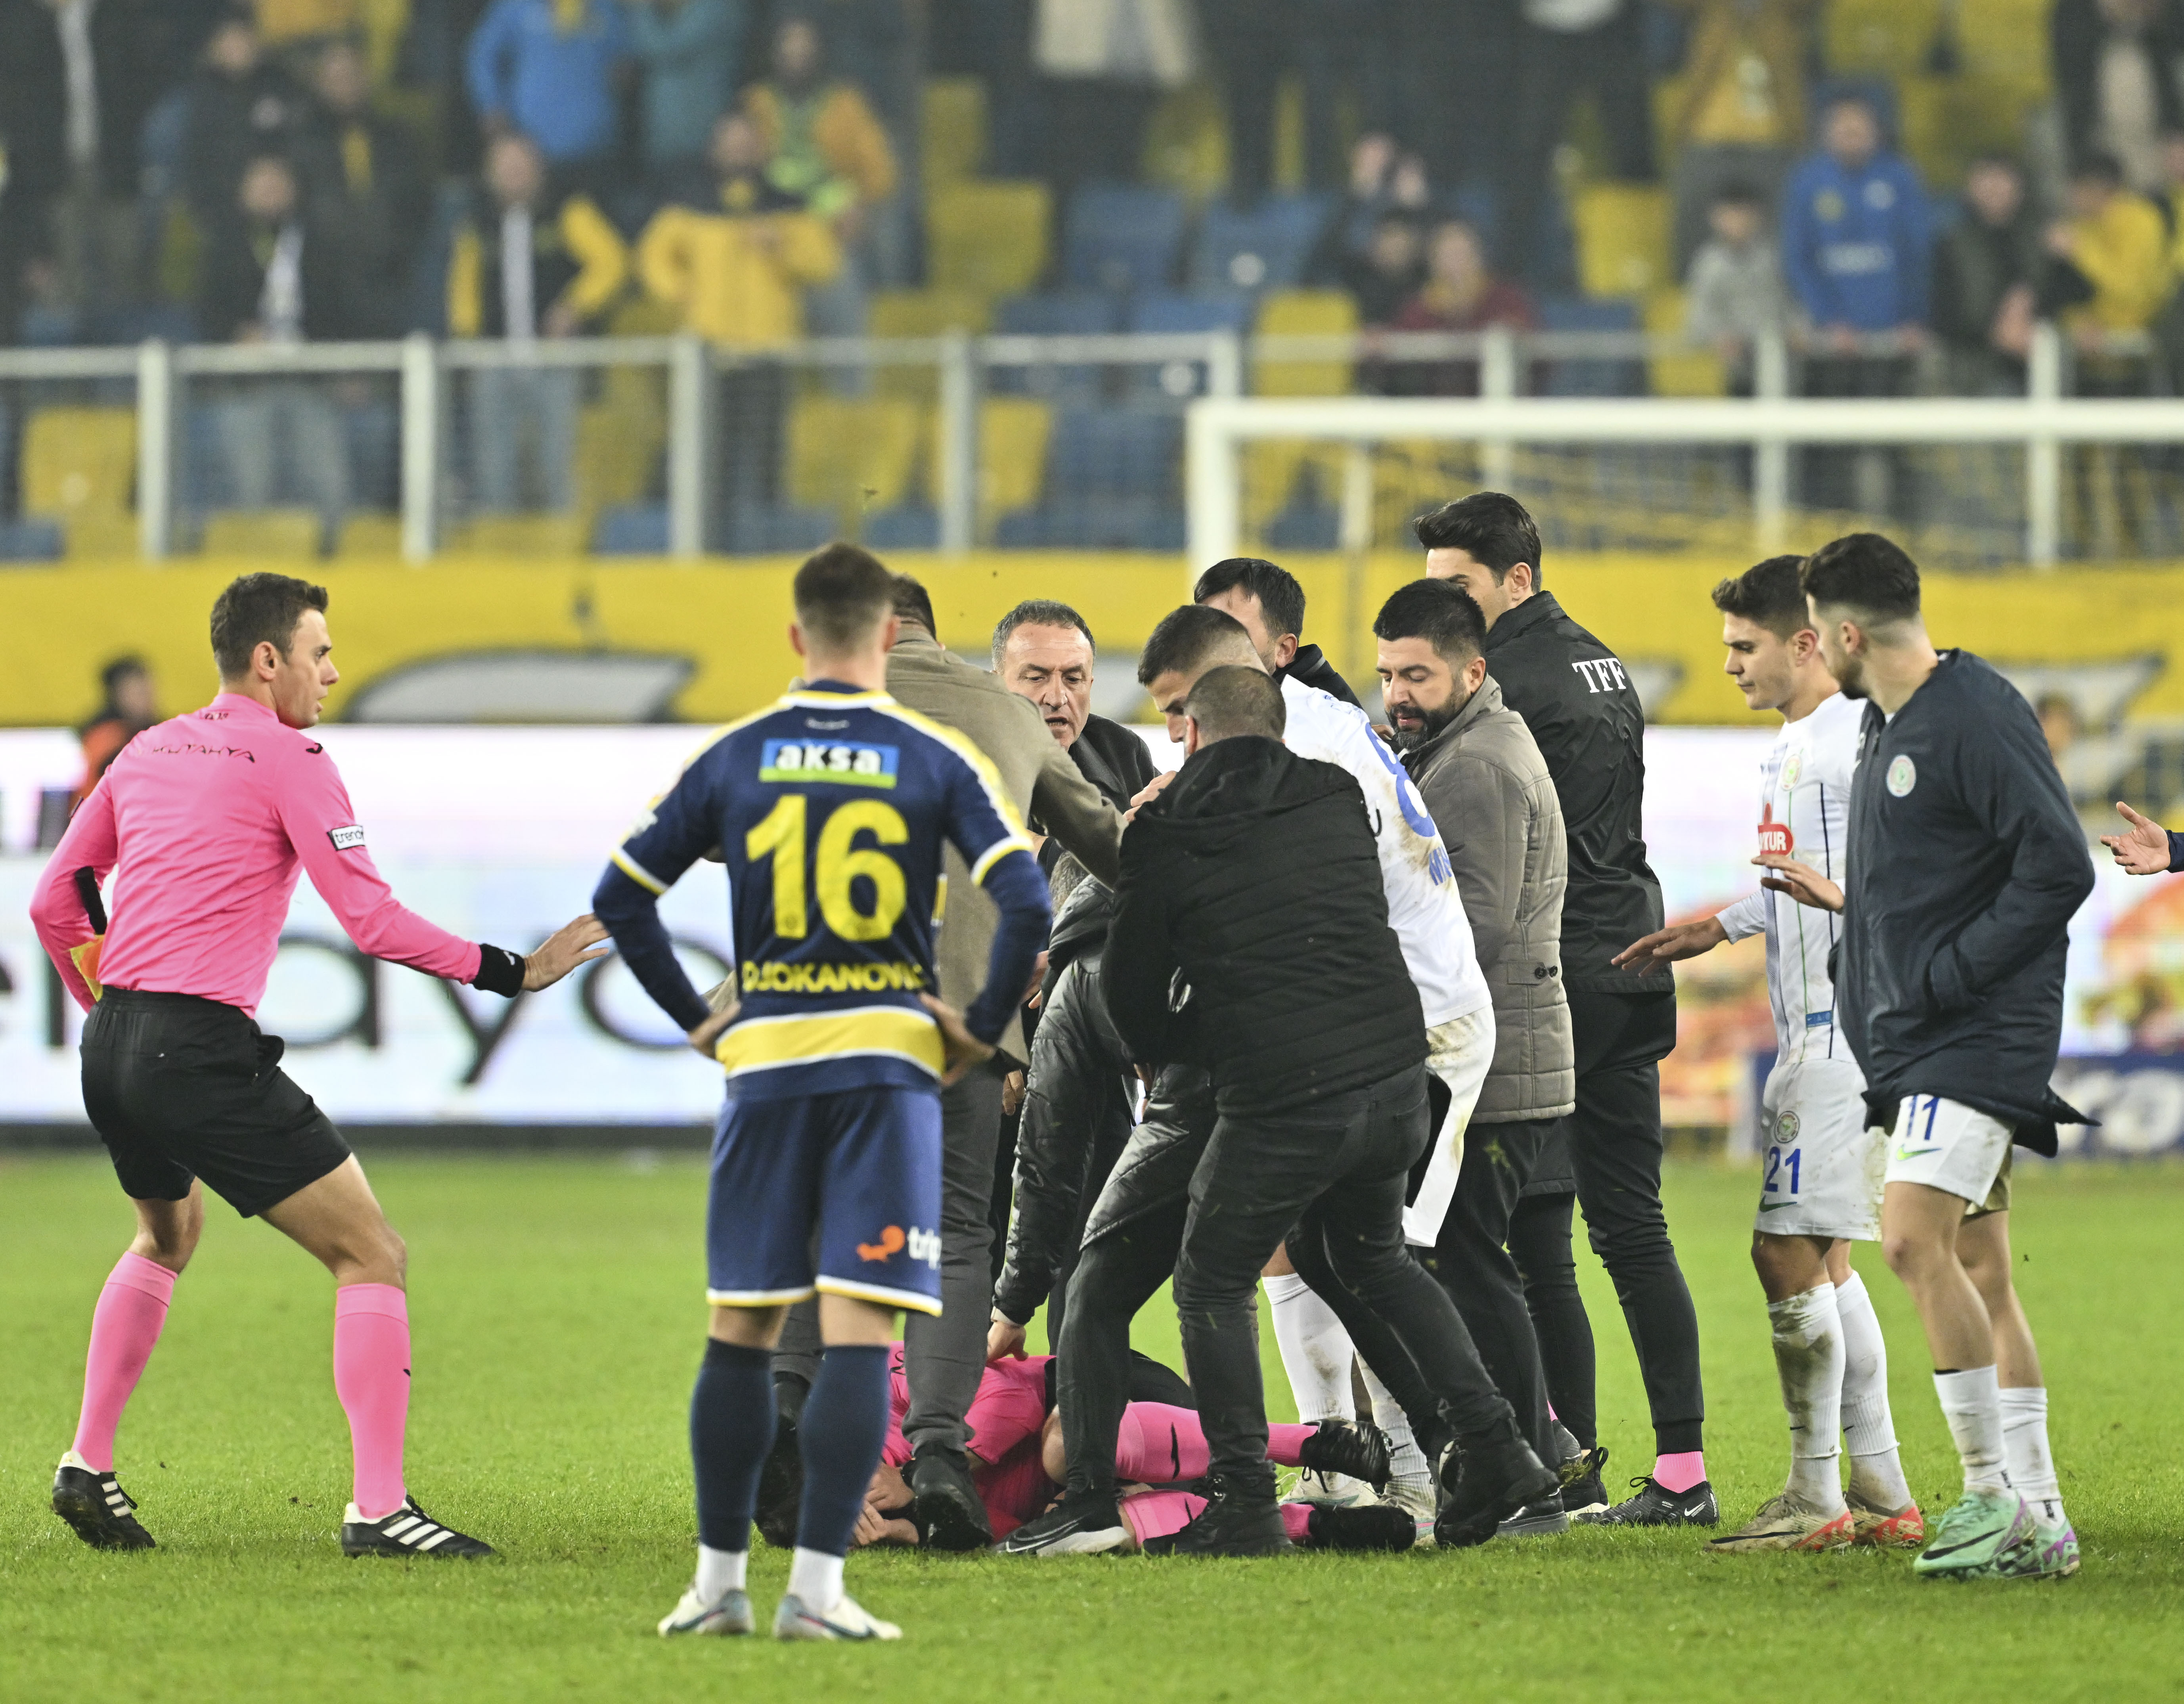 Super Lig Turchia, Ankaragucu-Rizespor: la terribile aggressione all’arbitro Meler. La gallery